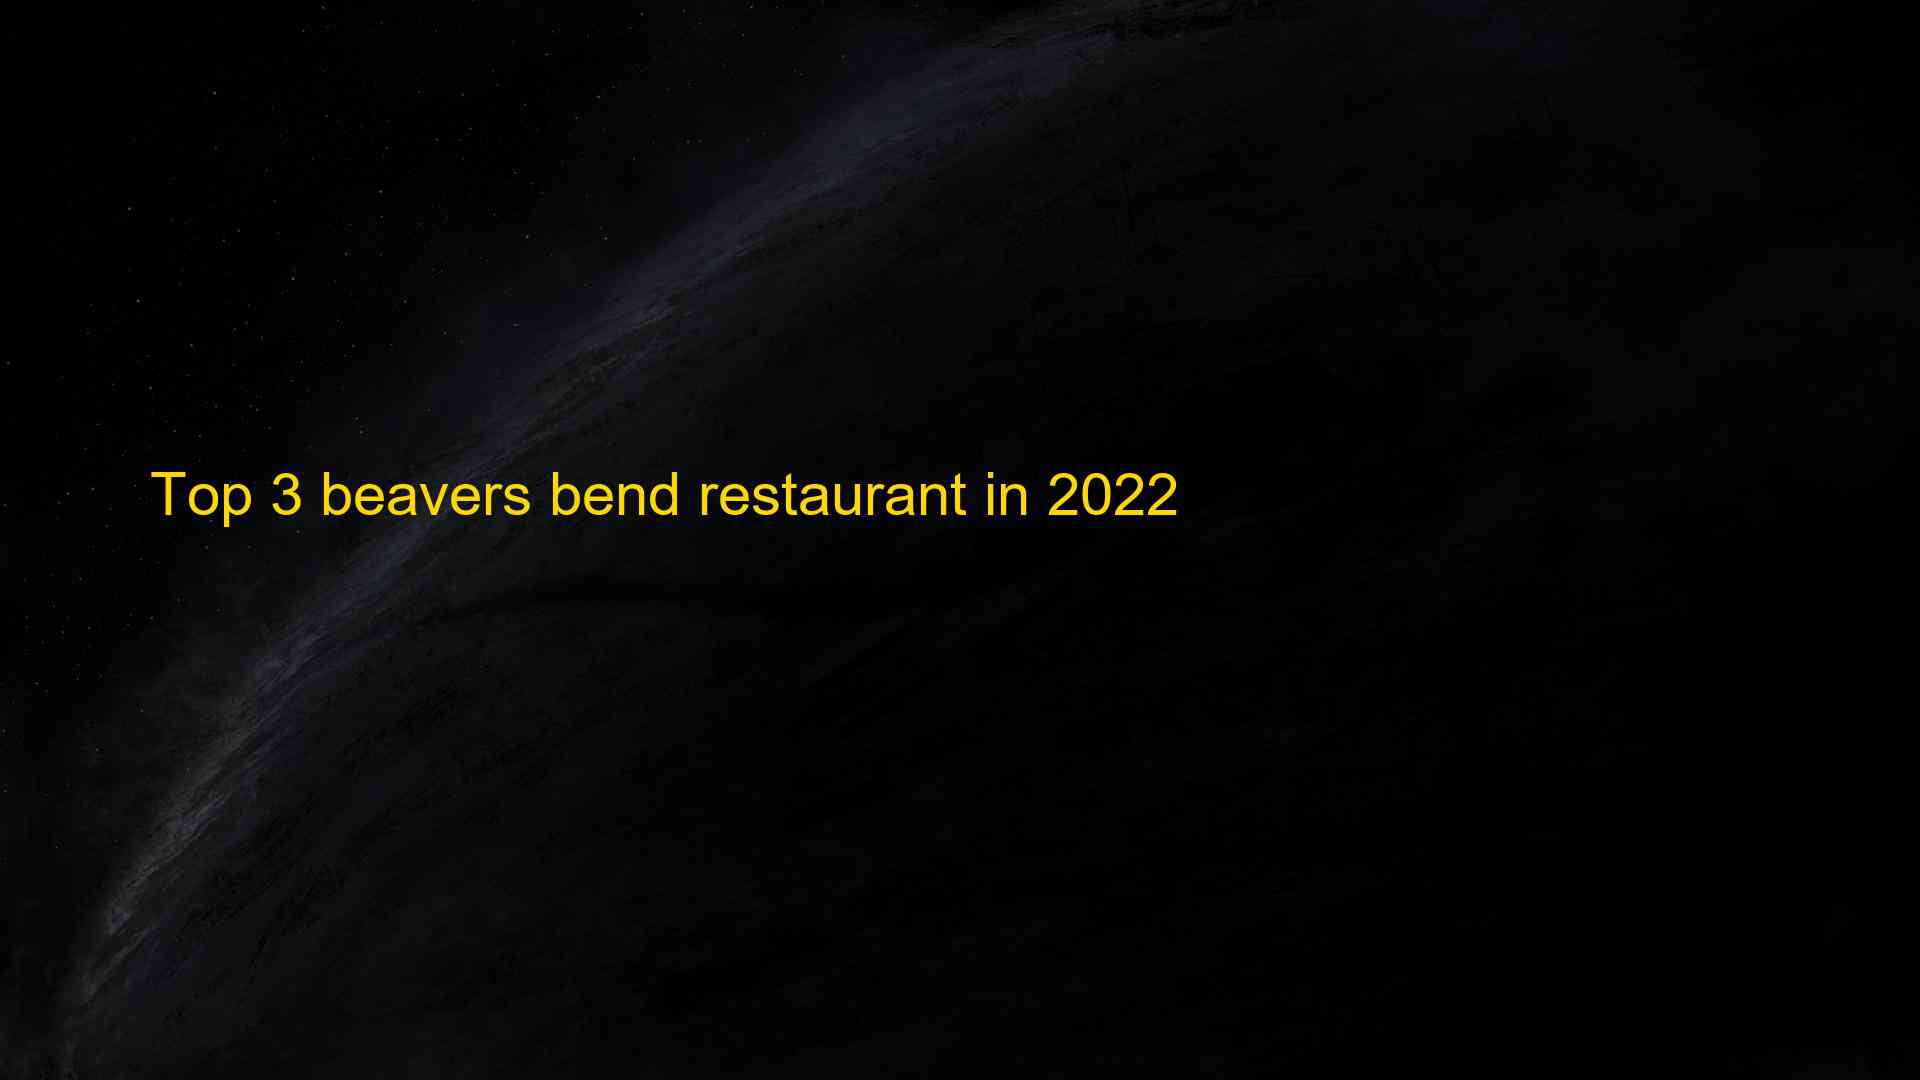 Top 3 beavers bend restaurant in 2022 1663519475